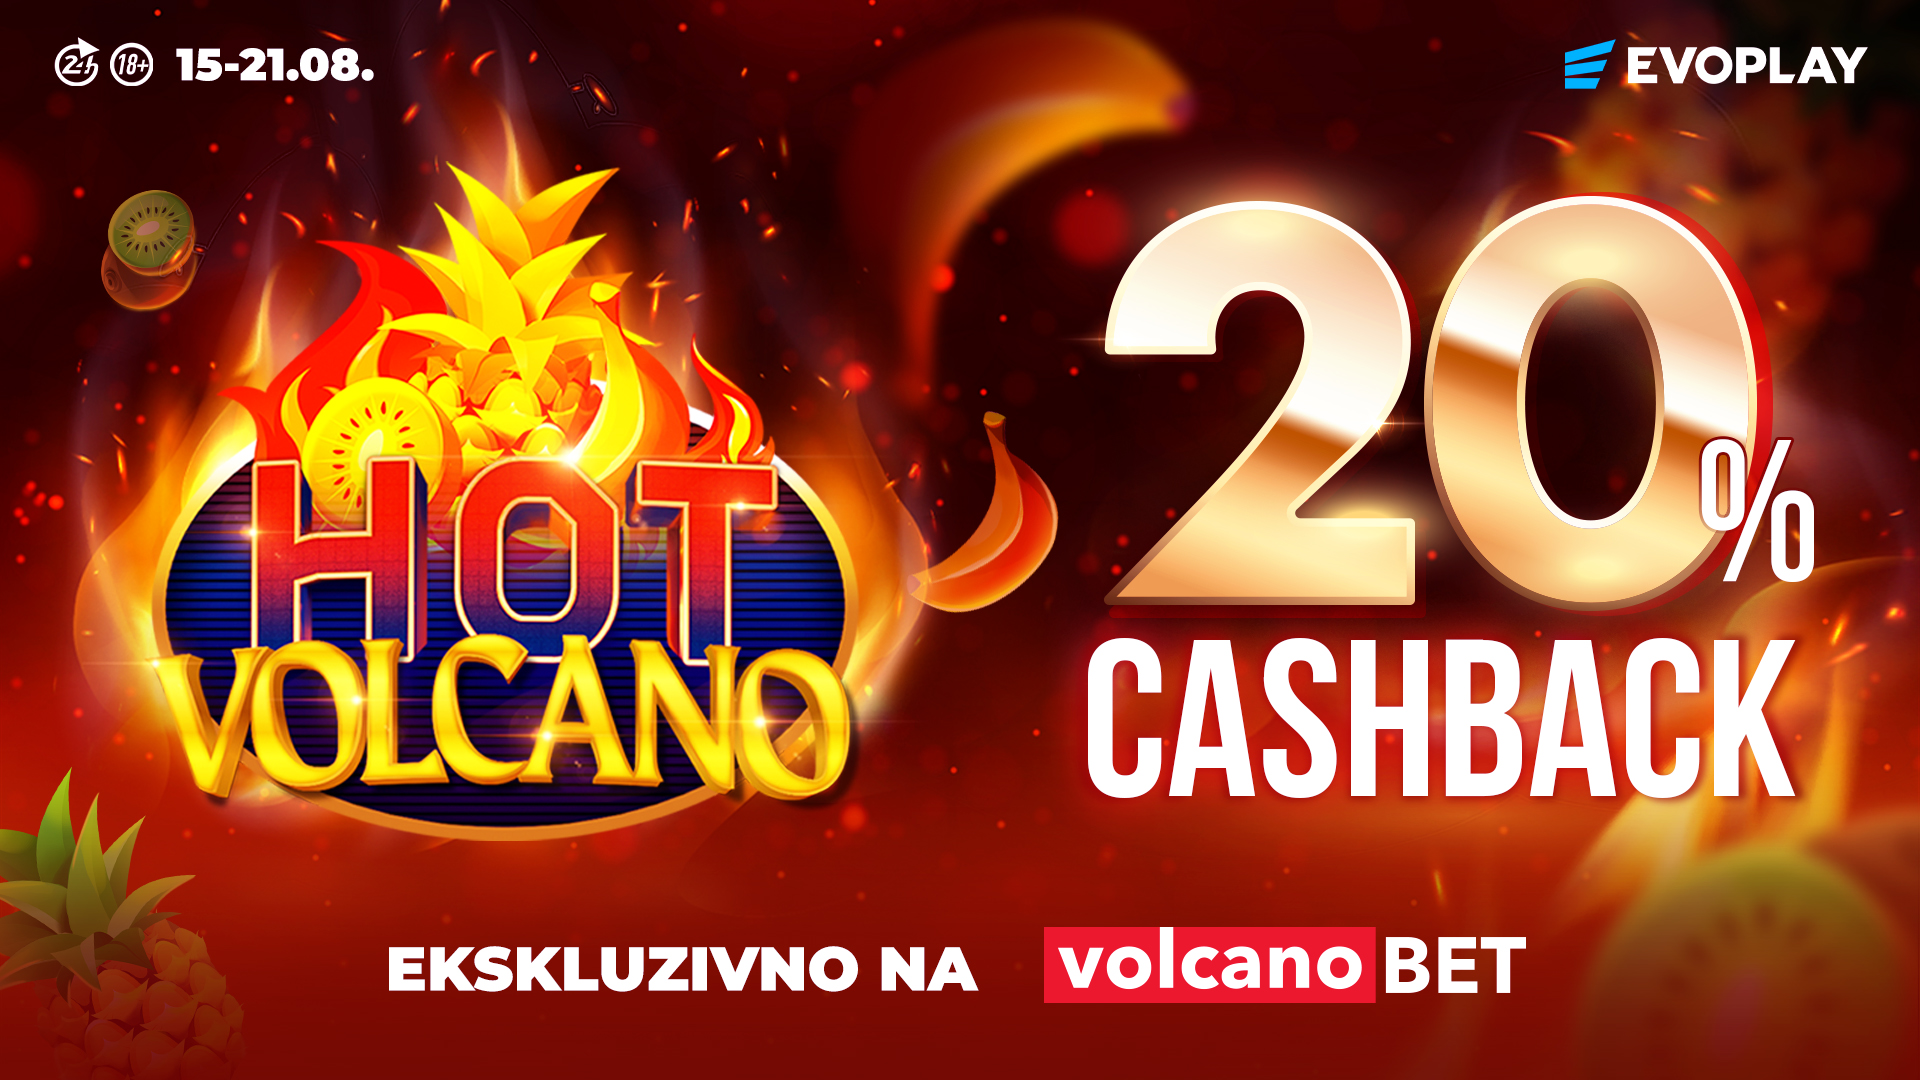 Hot Volcano CashBack